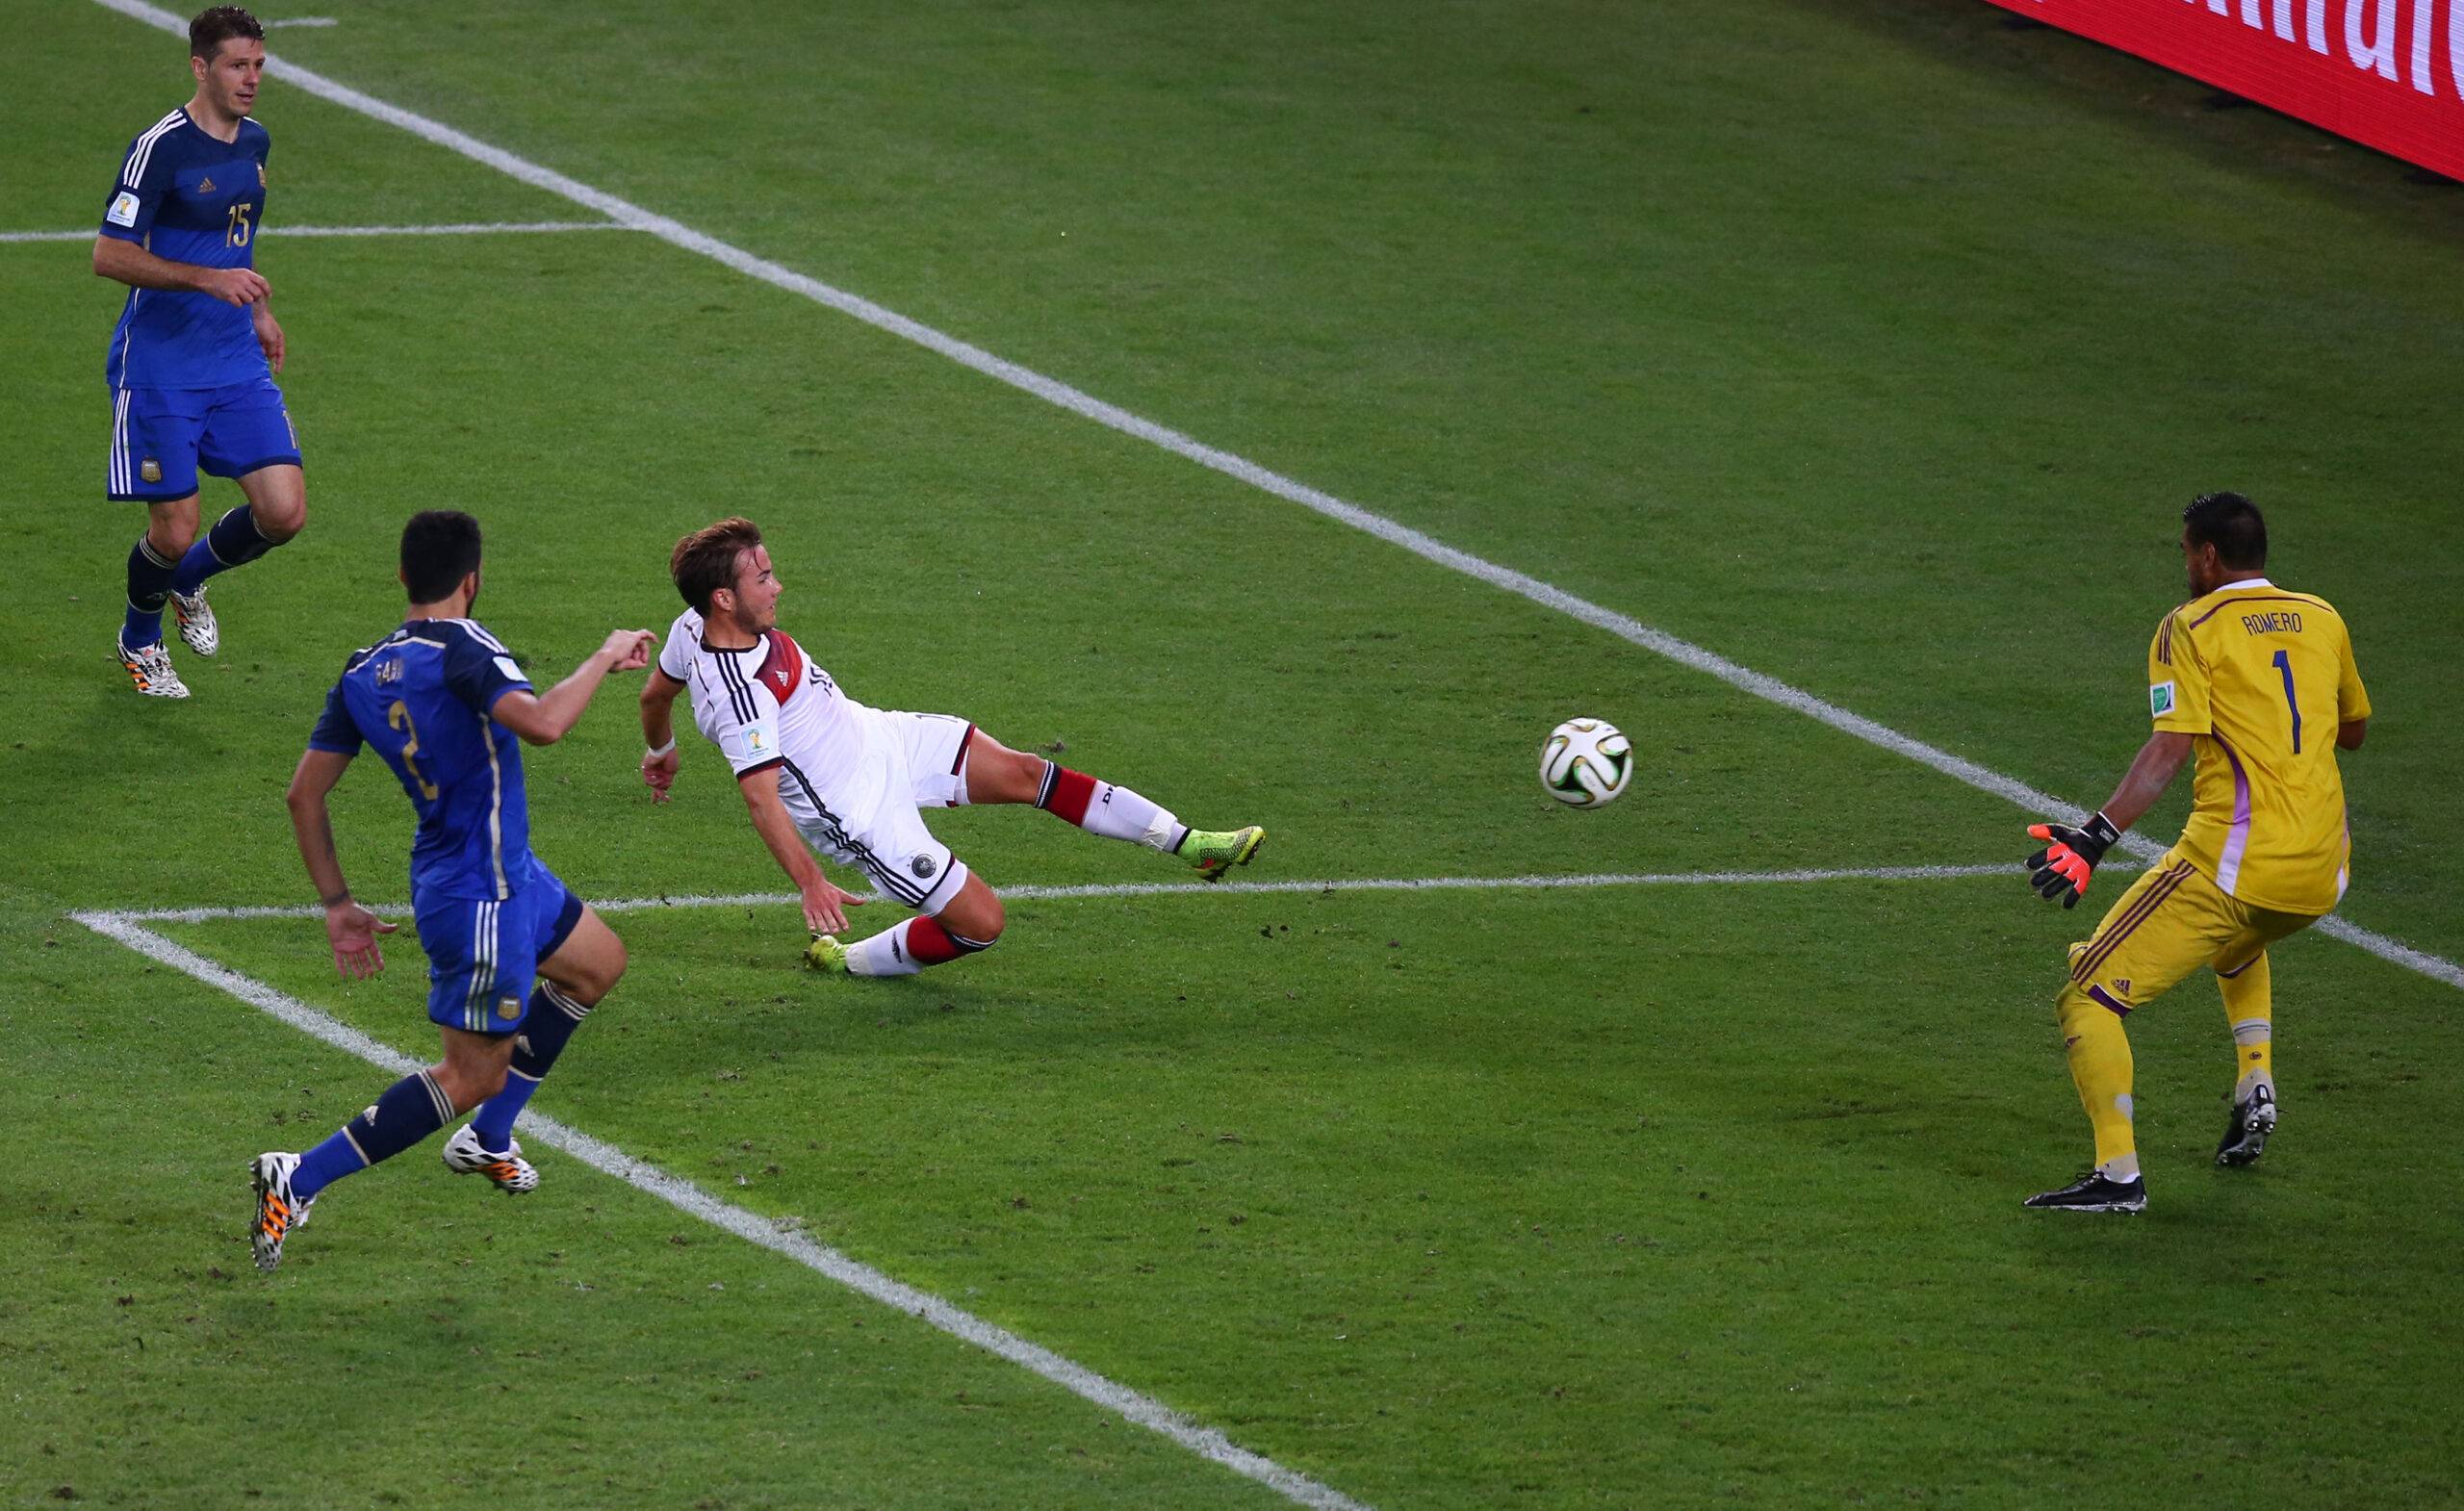 Mario Gotze scores goal